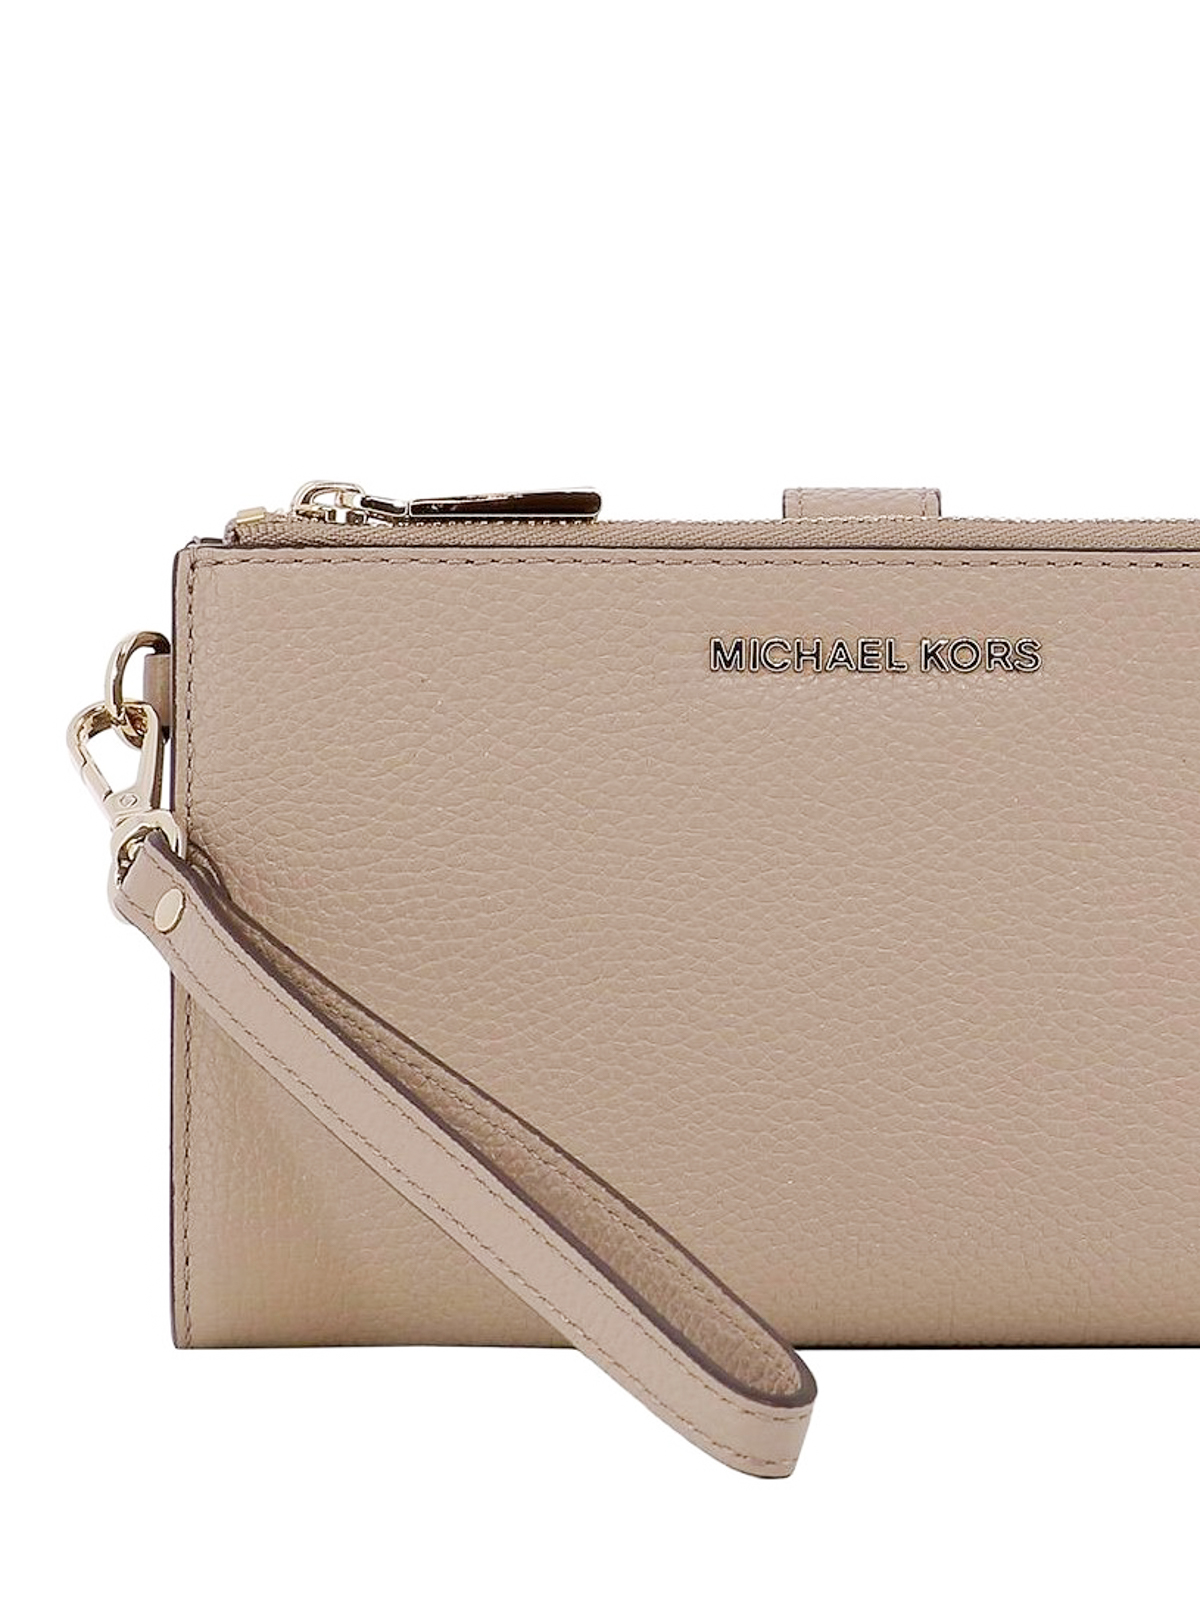 Wallets & purses Michael Kors - Adele double zip leather wallet -  32T8TFDW4L208